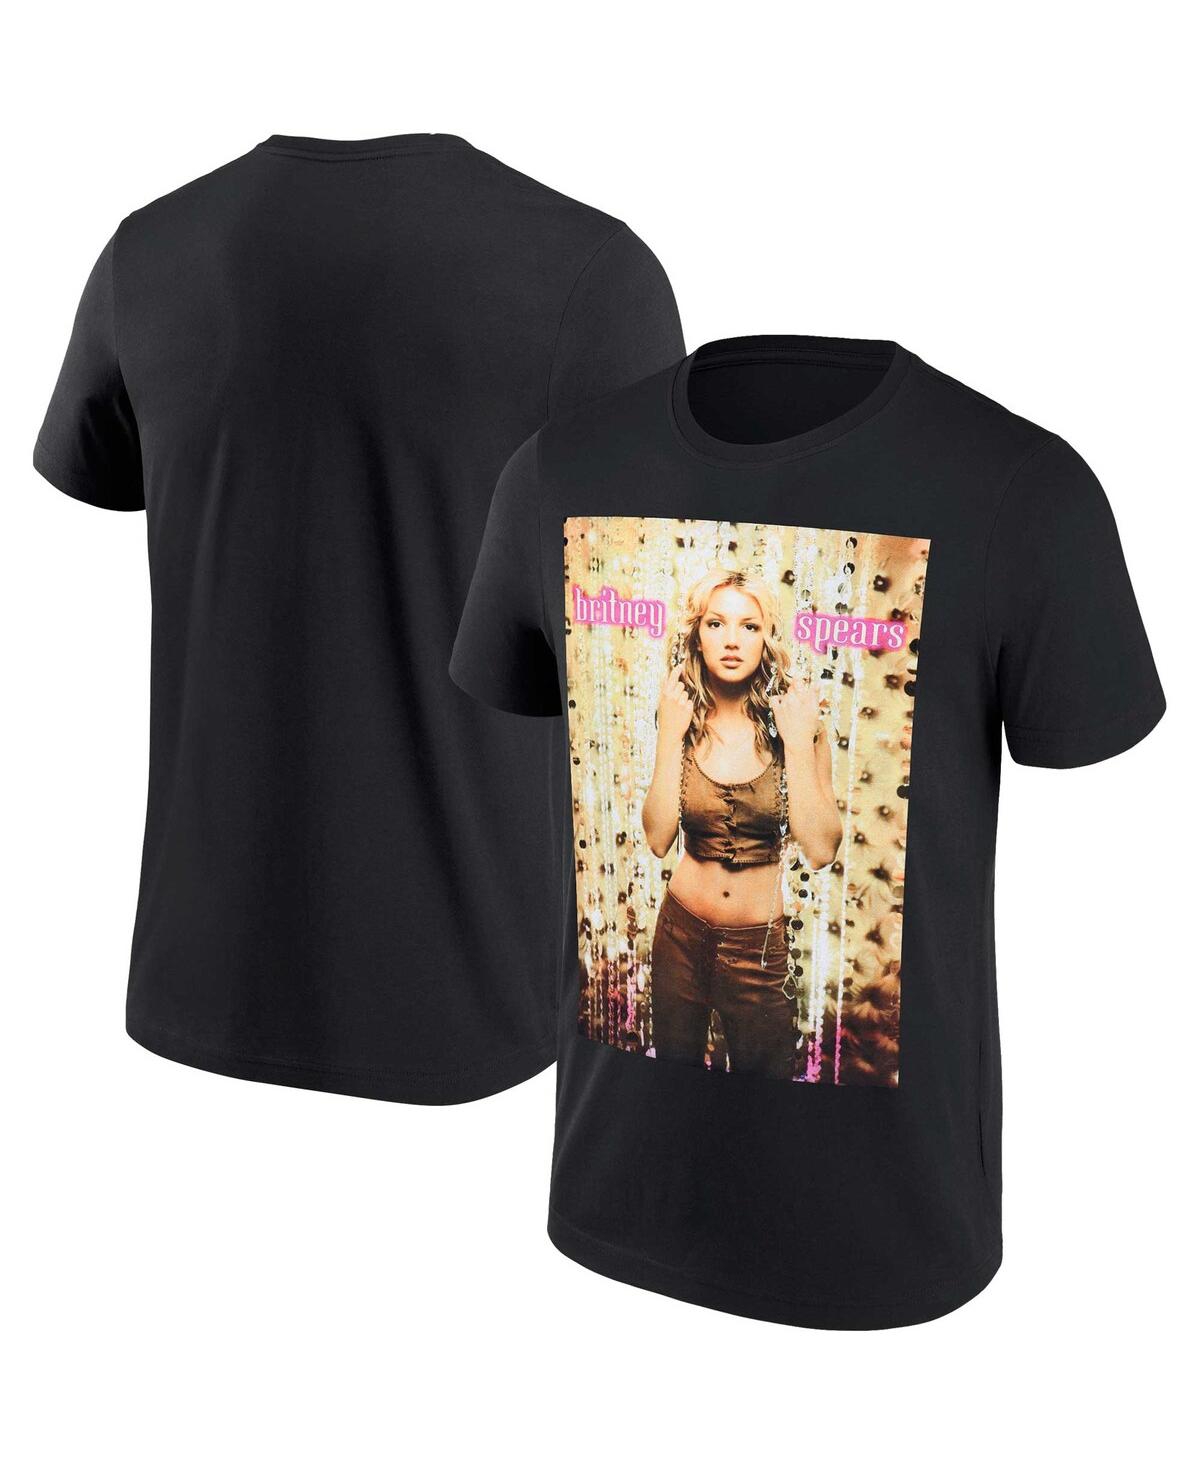 Men's and Women's Black Britney Spears T-shirt - Black